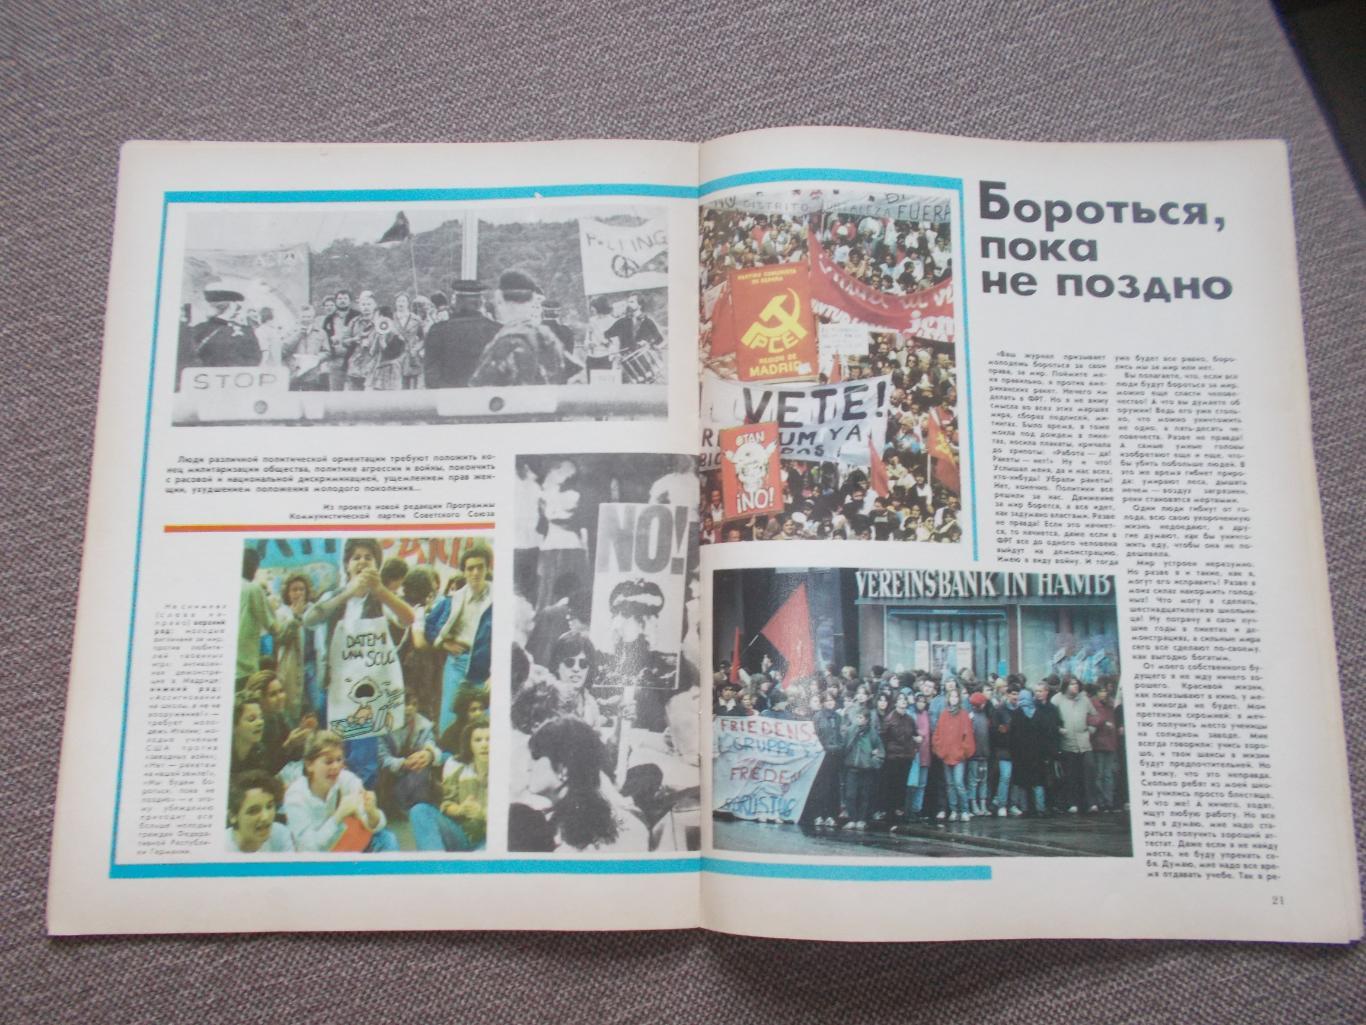 Журнал СССР :Ровесник№ 2 (февраль) 1986 г. (Молодежный музыкальный журнал) 4